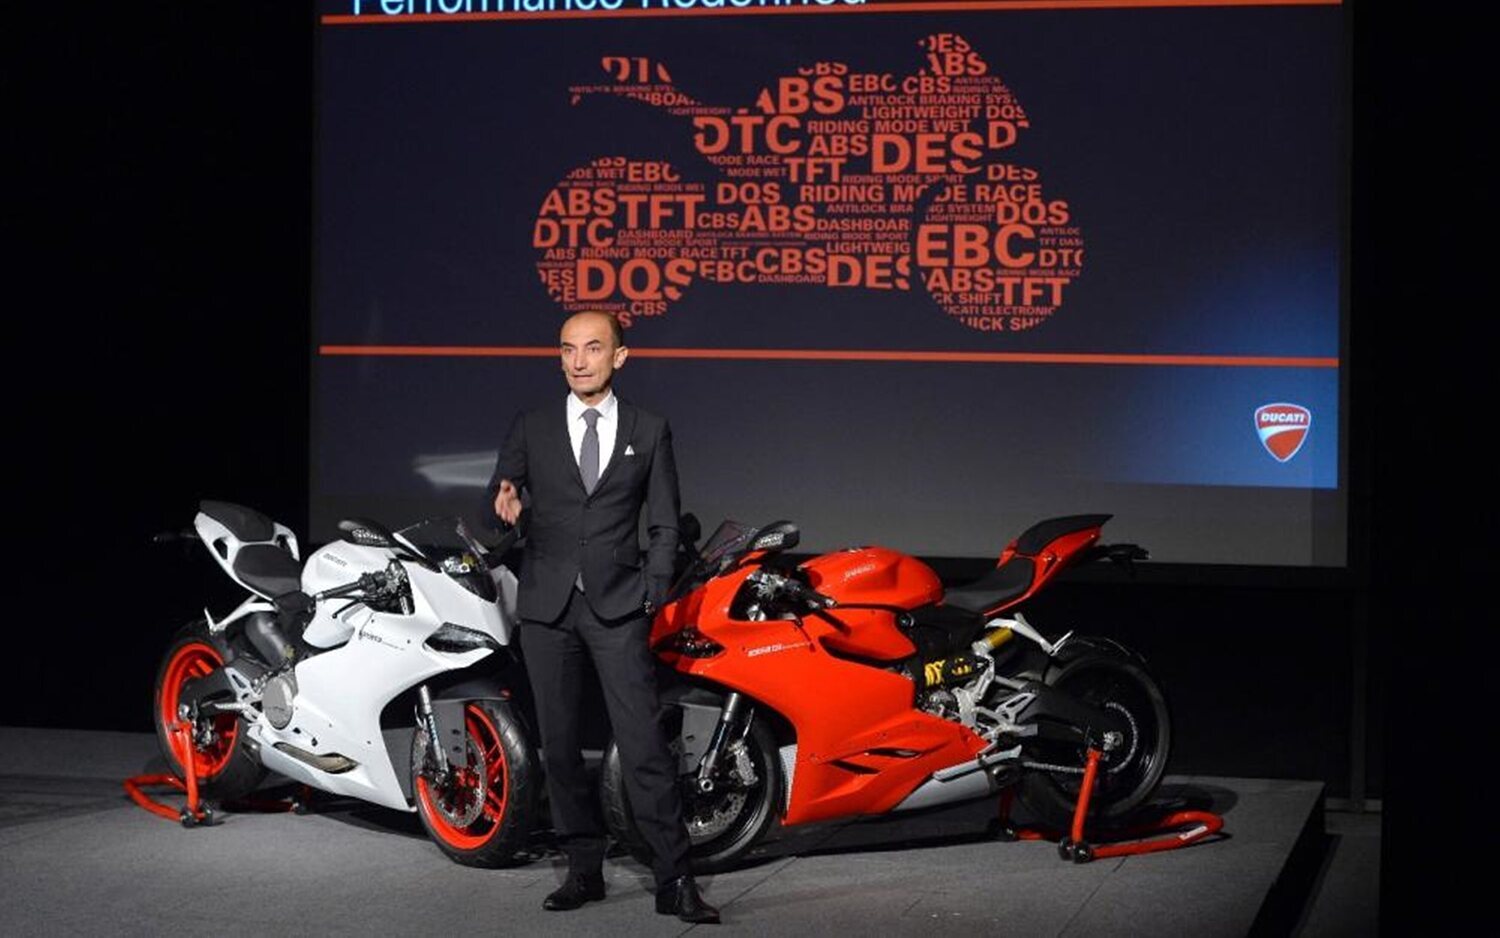 Claudio Domenicali: "La moto estaba muy bien, pero se puede hacer mejor"